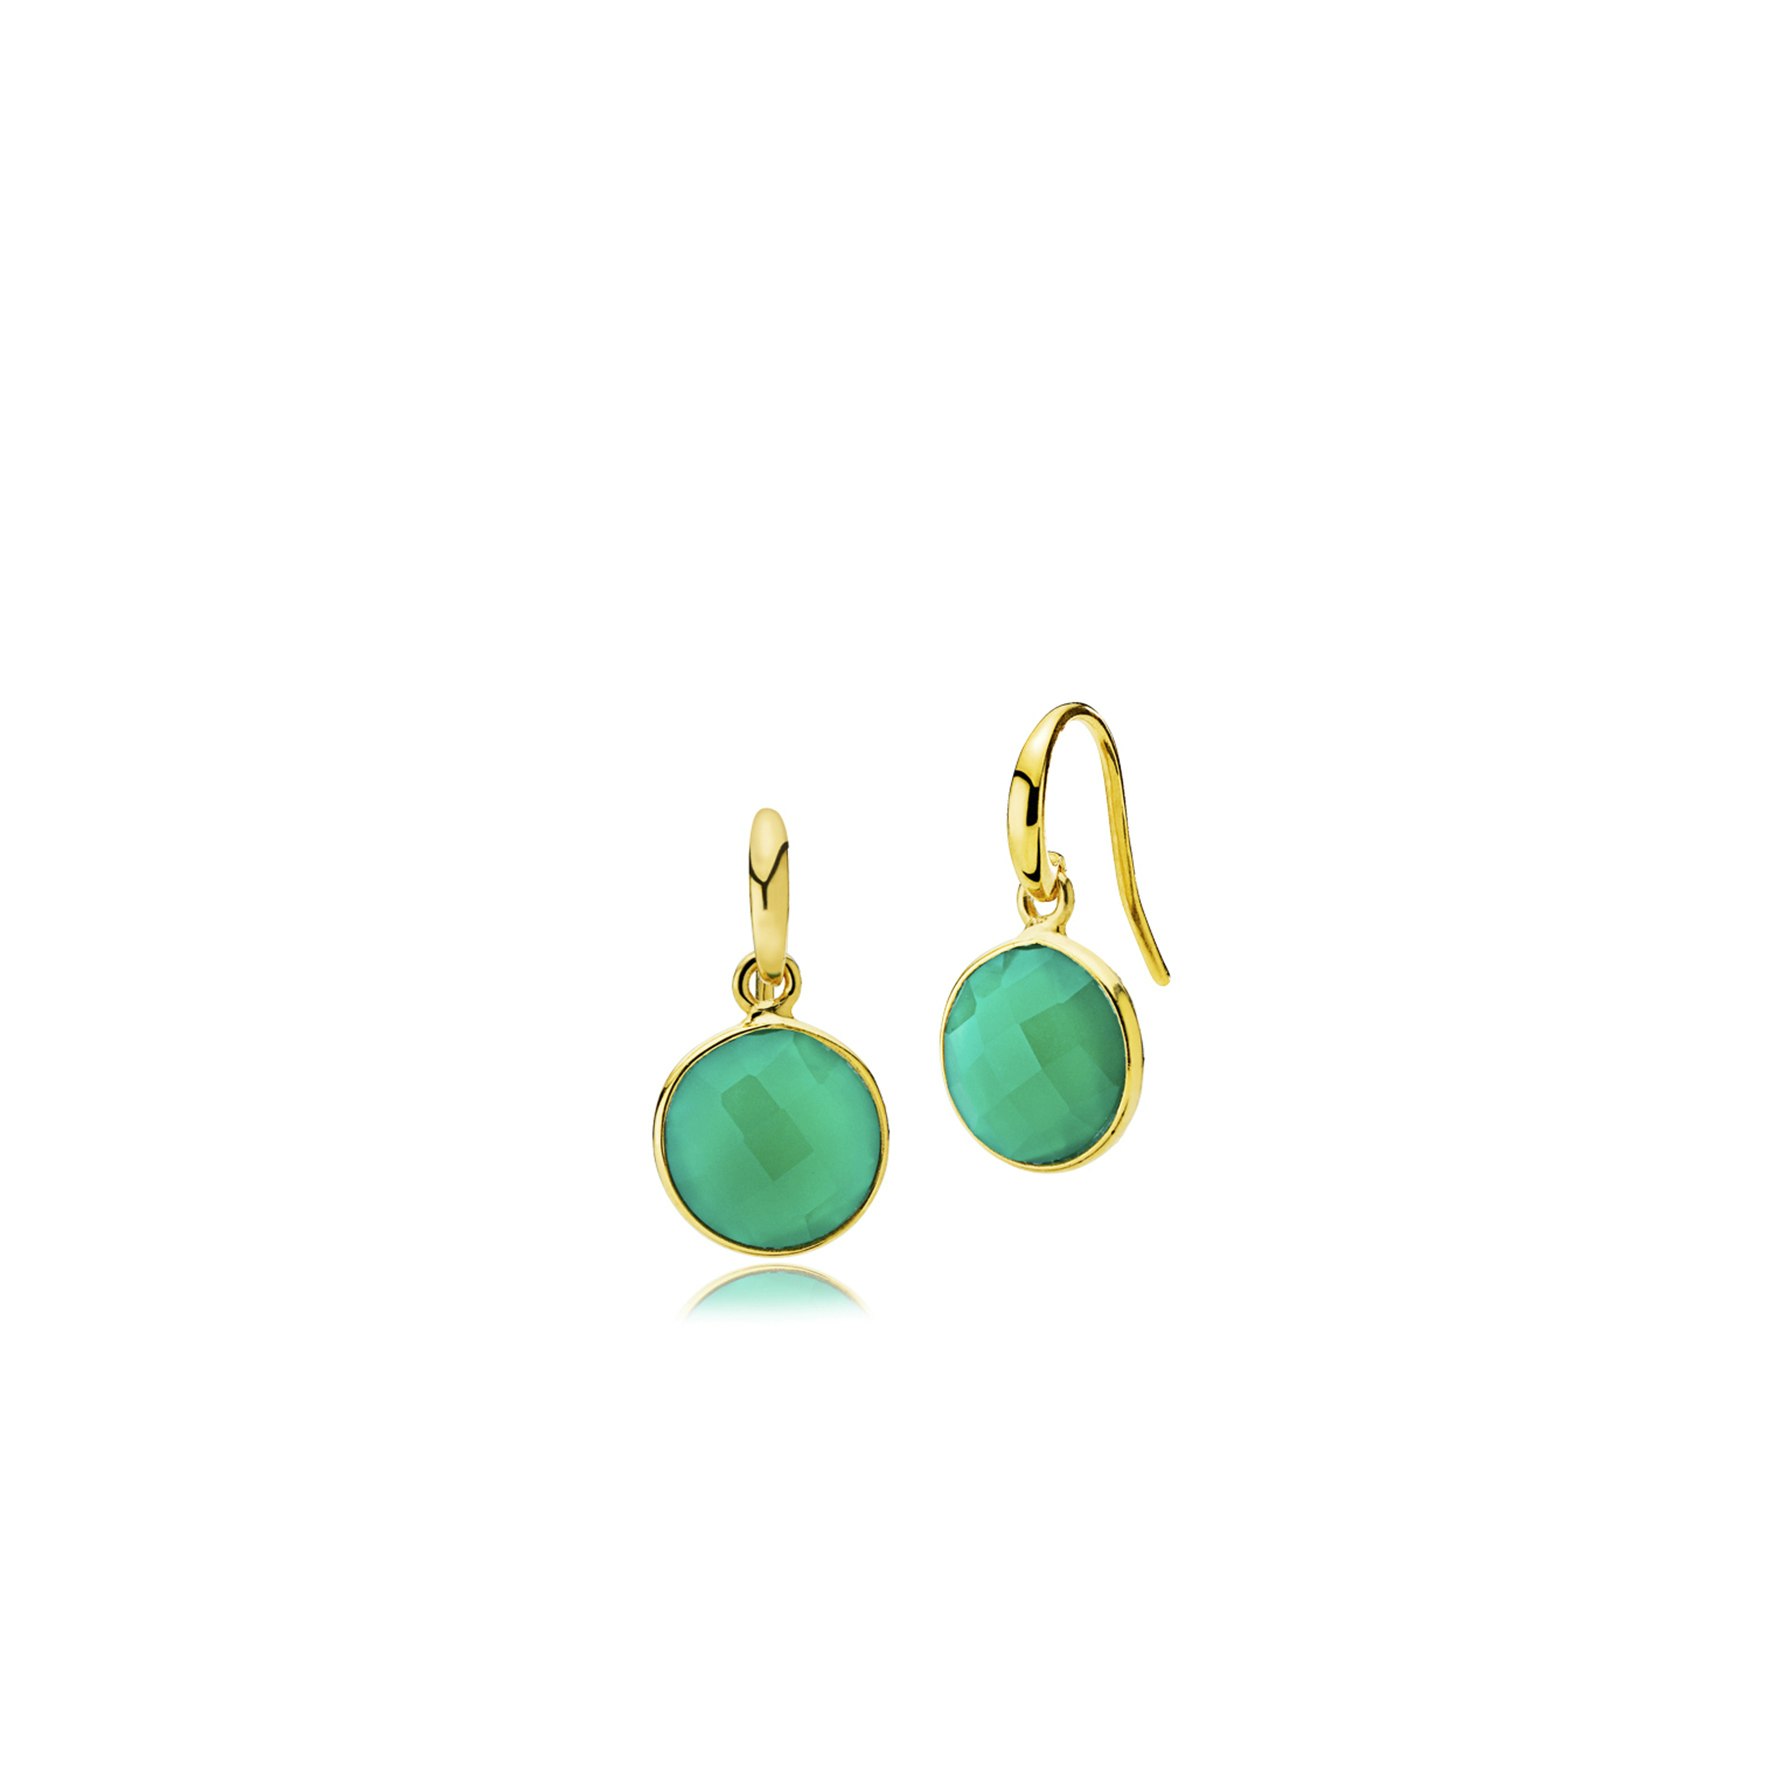 Prima Donna earrings small Green Onyx fra Izabel Camille i Forgylt-Sølv Sterling 925